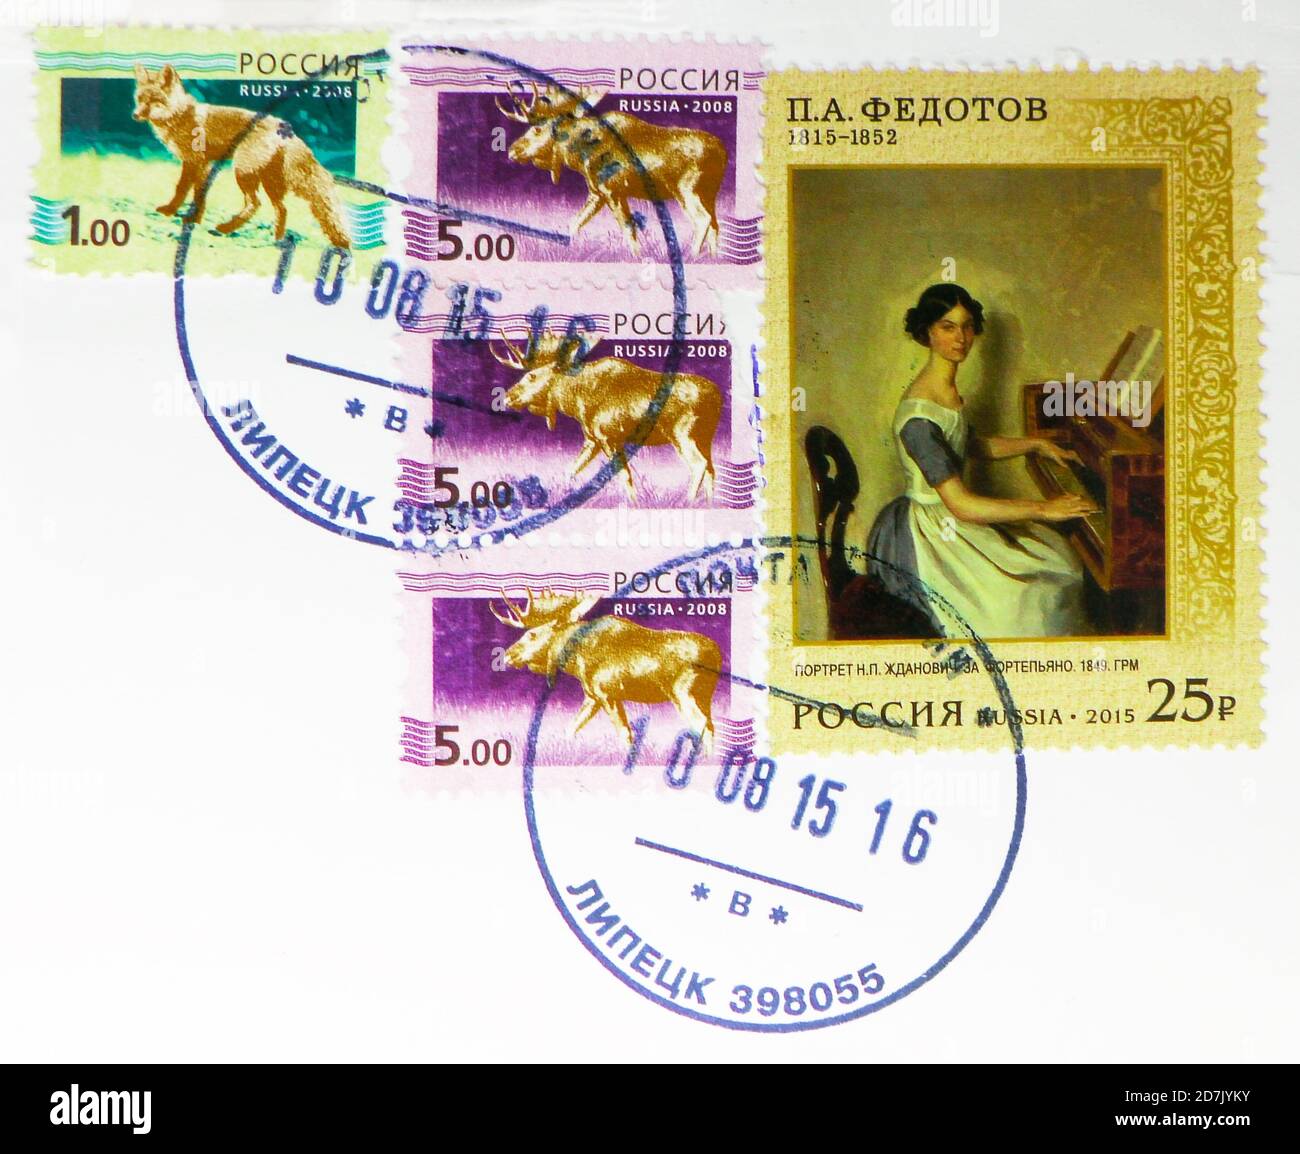 MOSCOU, RUSSIE - 11 MARS 2020 : timbres-poste imprimés en Russie avec le timbre de Lipetsk montre Pavel A. Fedotov, Portrait de N.P. Zhdanovich au Har Banque D'Images